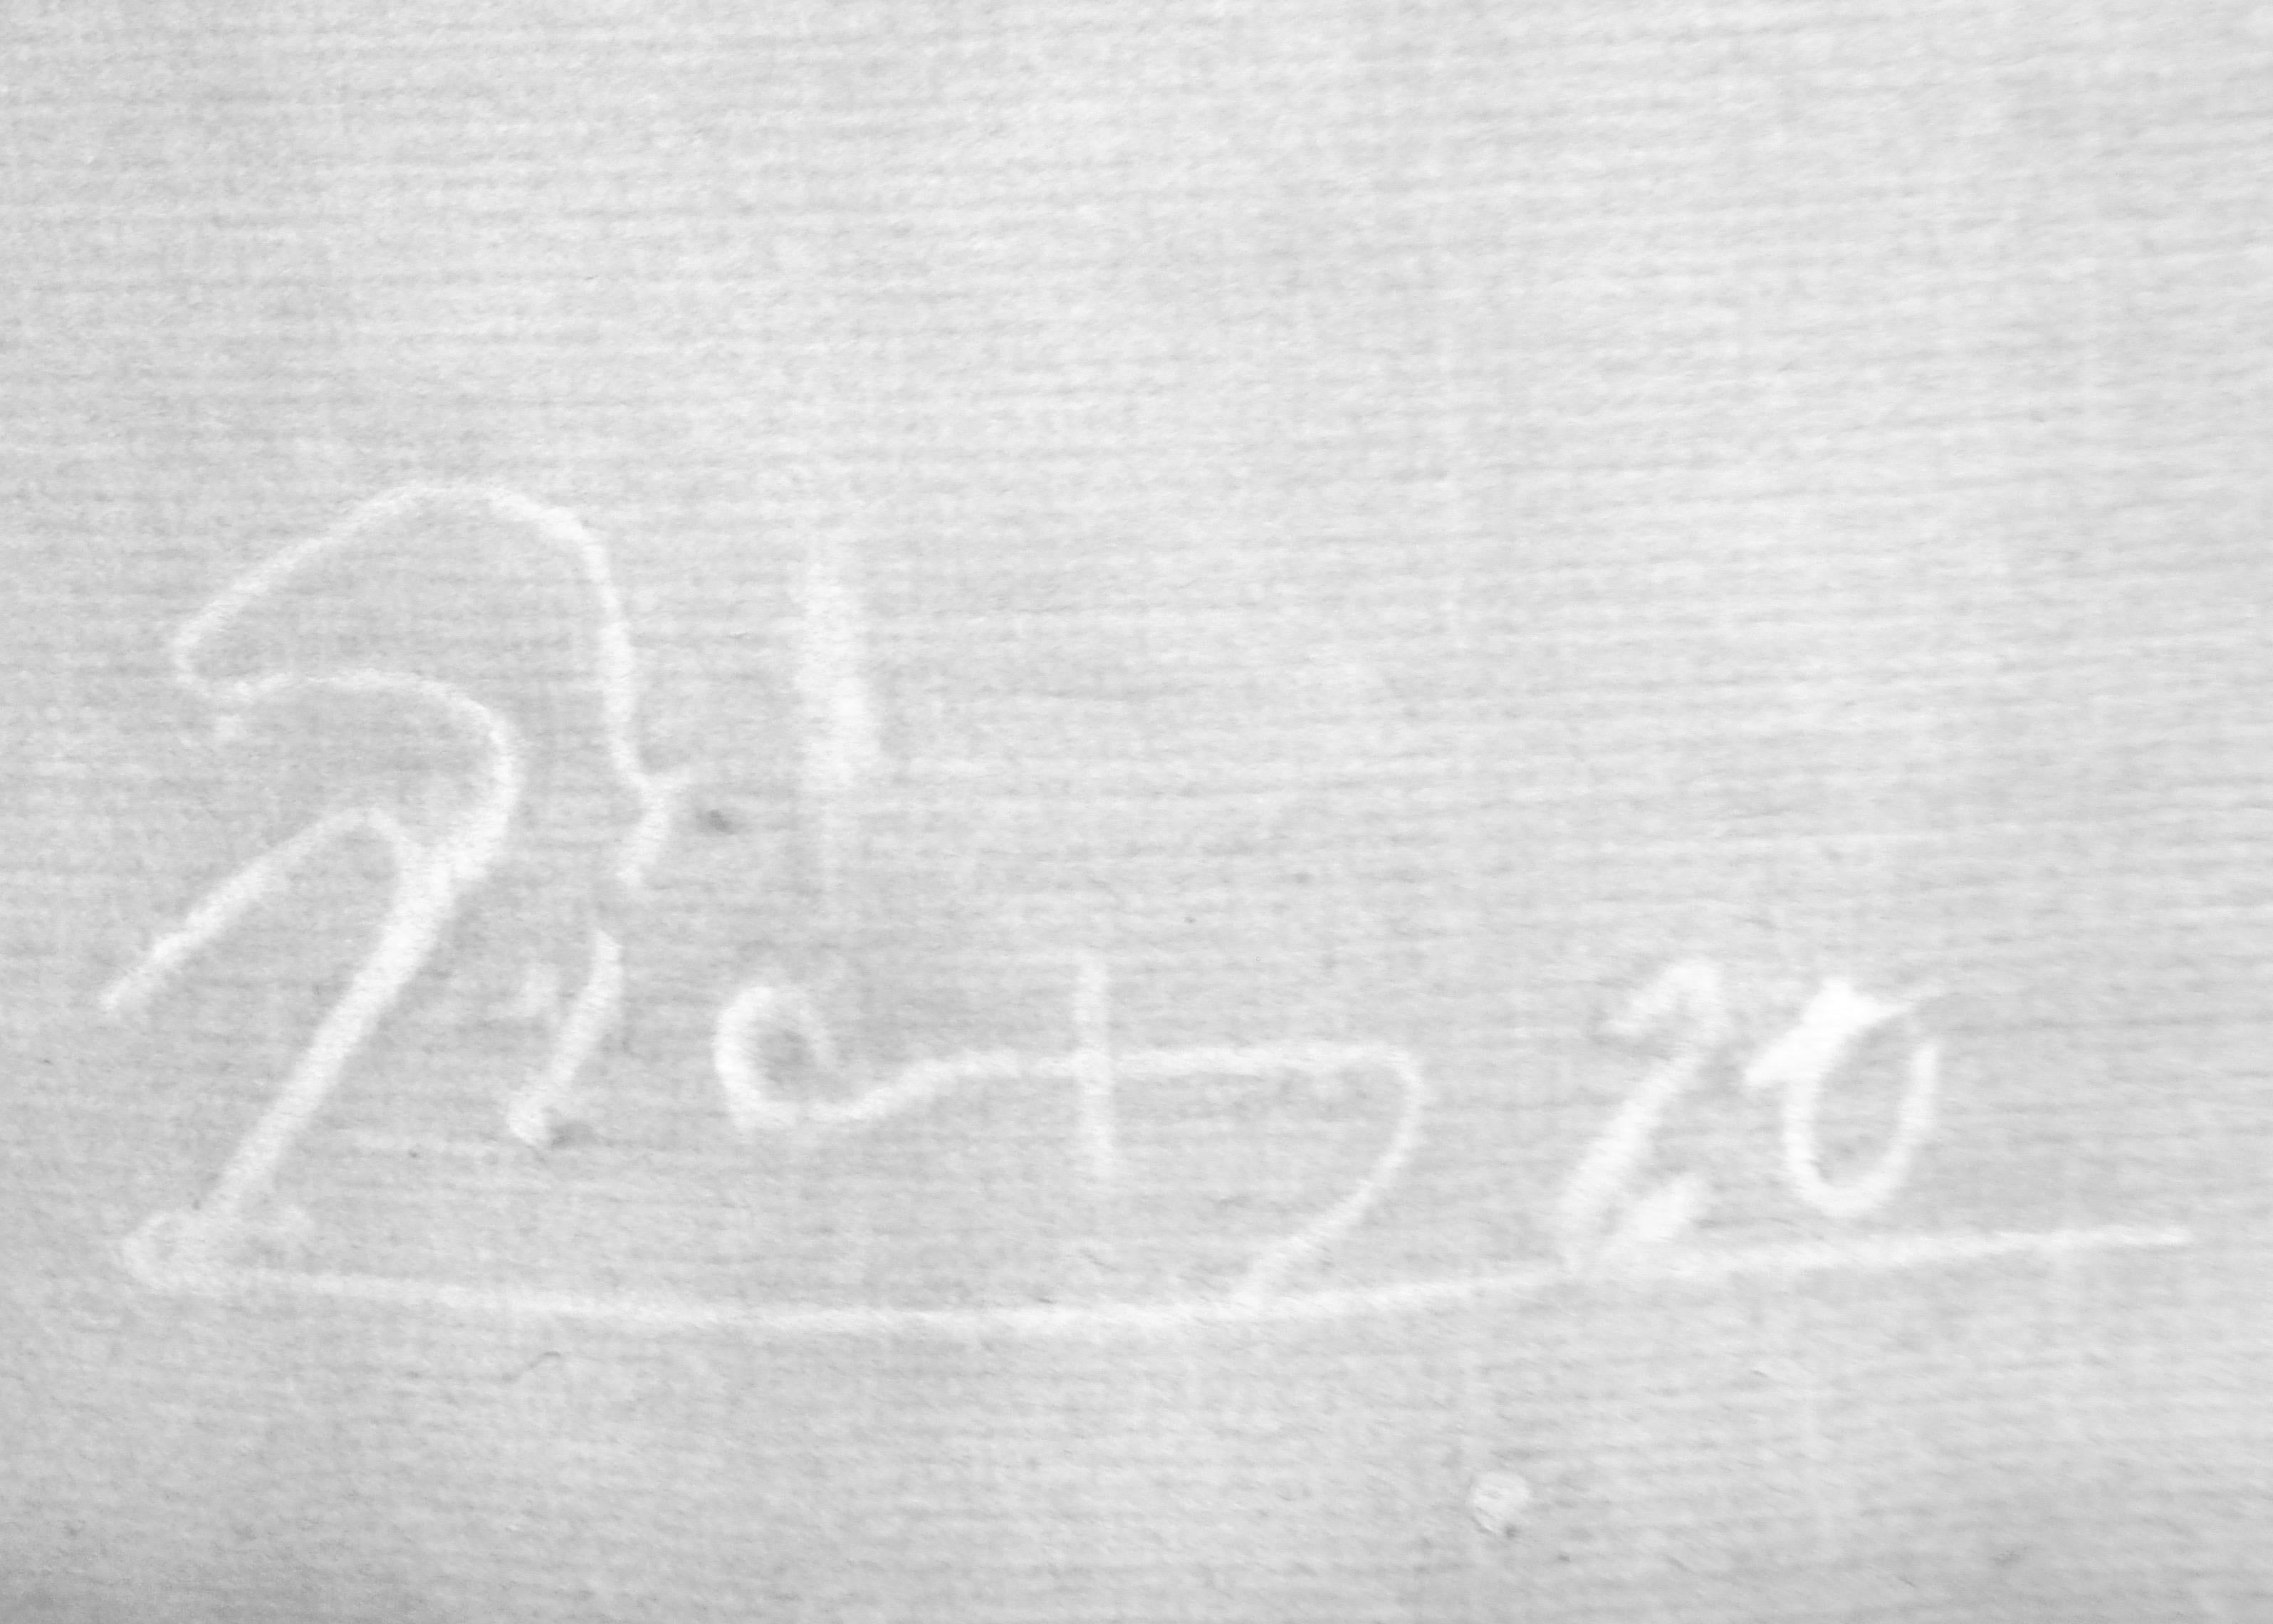 Paper Pablo Picasso Signed Etching, Minotaure une Coupe à la Main et Jeune Femme, 1933